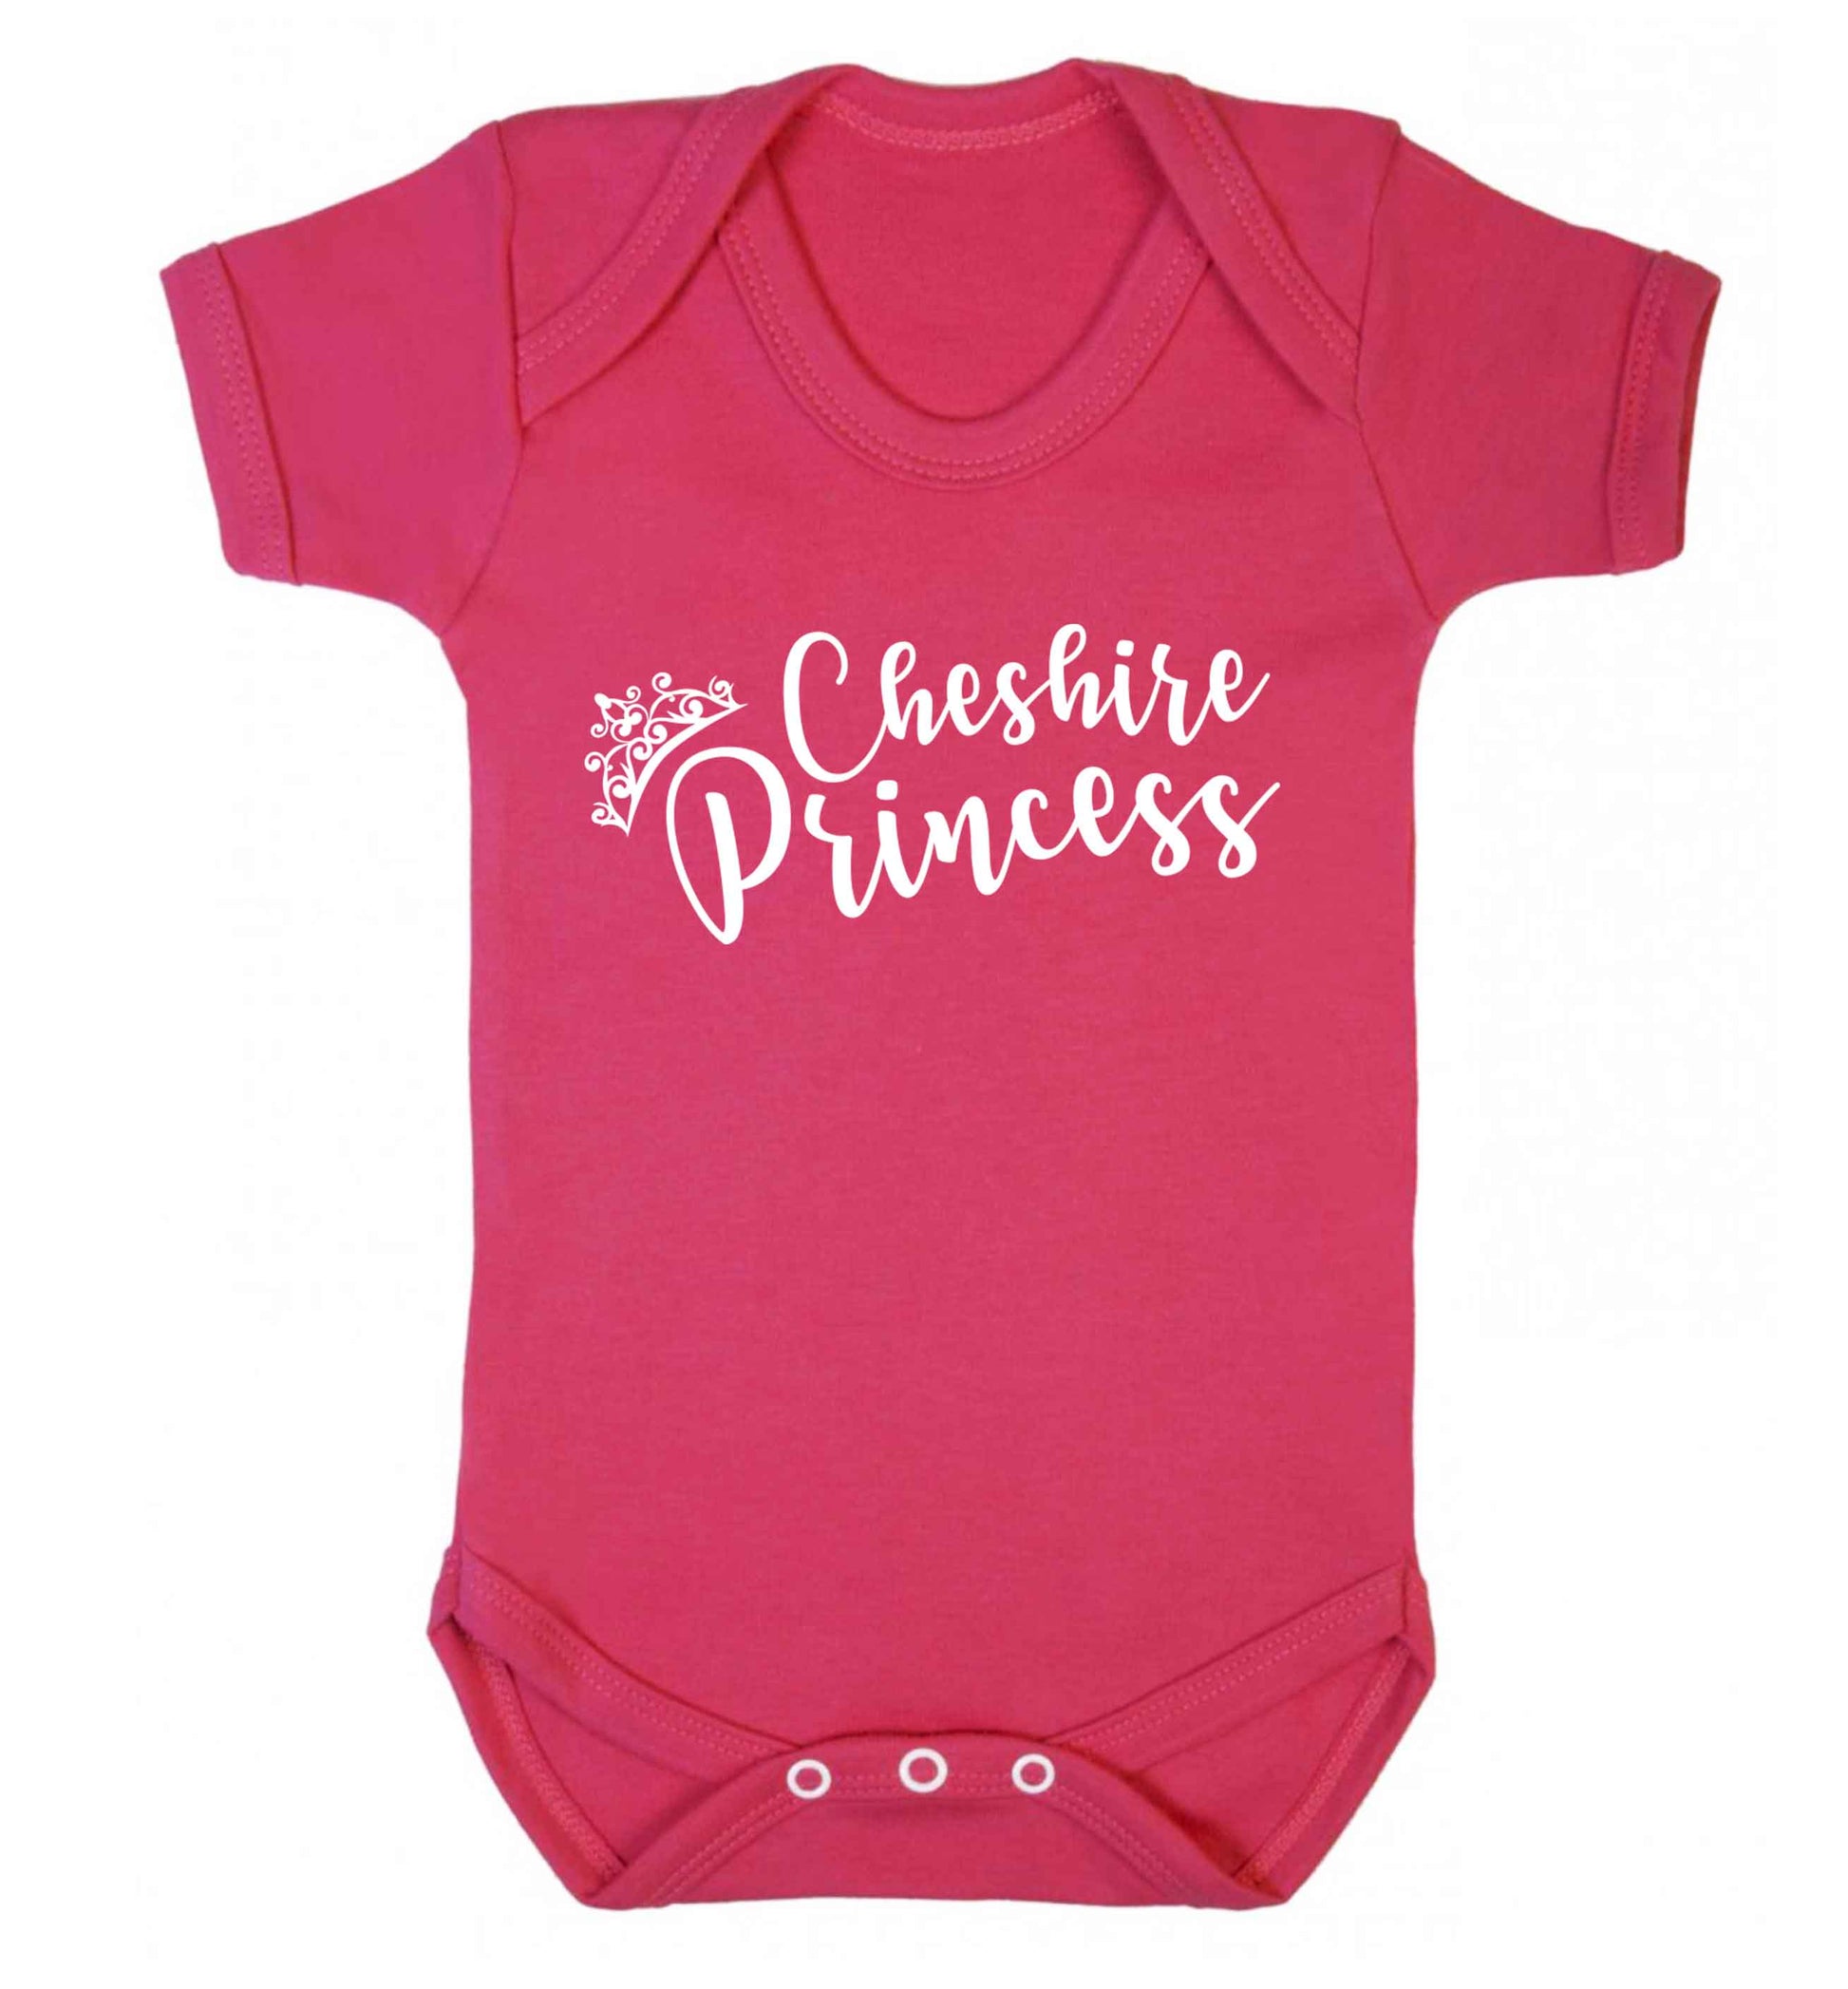 Cheshire princess Baby Vest dark pink 18-24 months